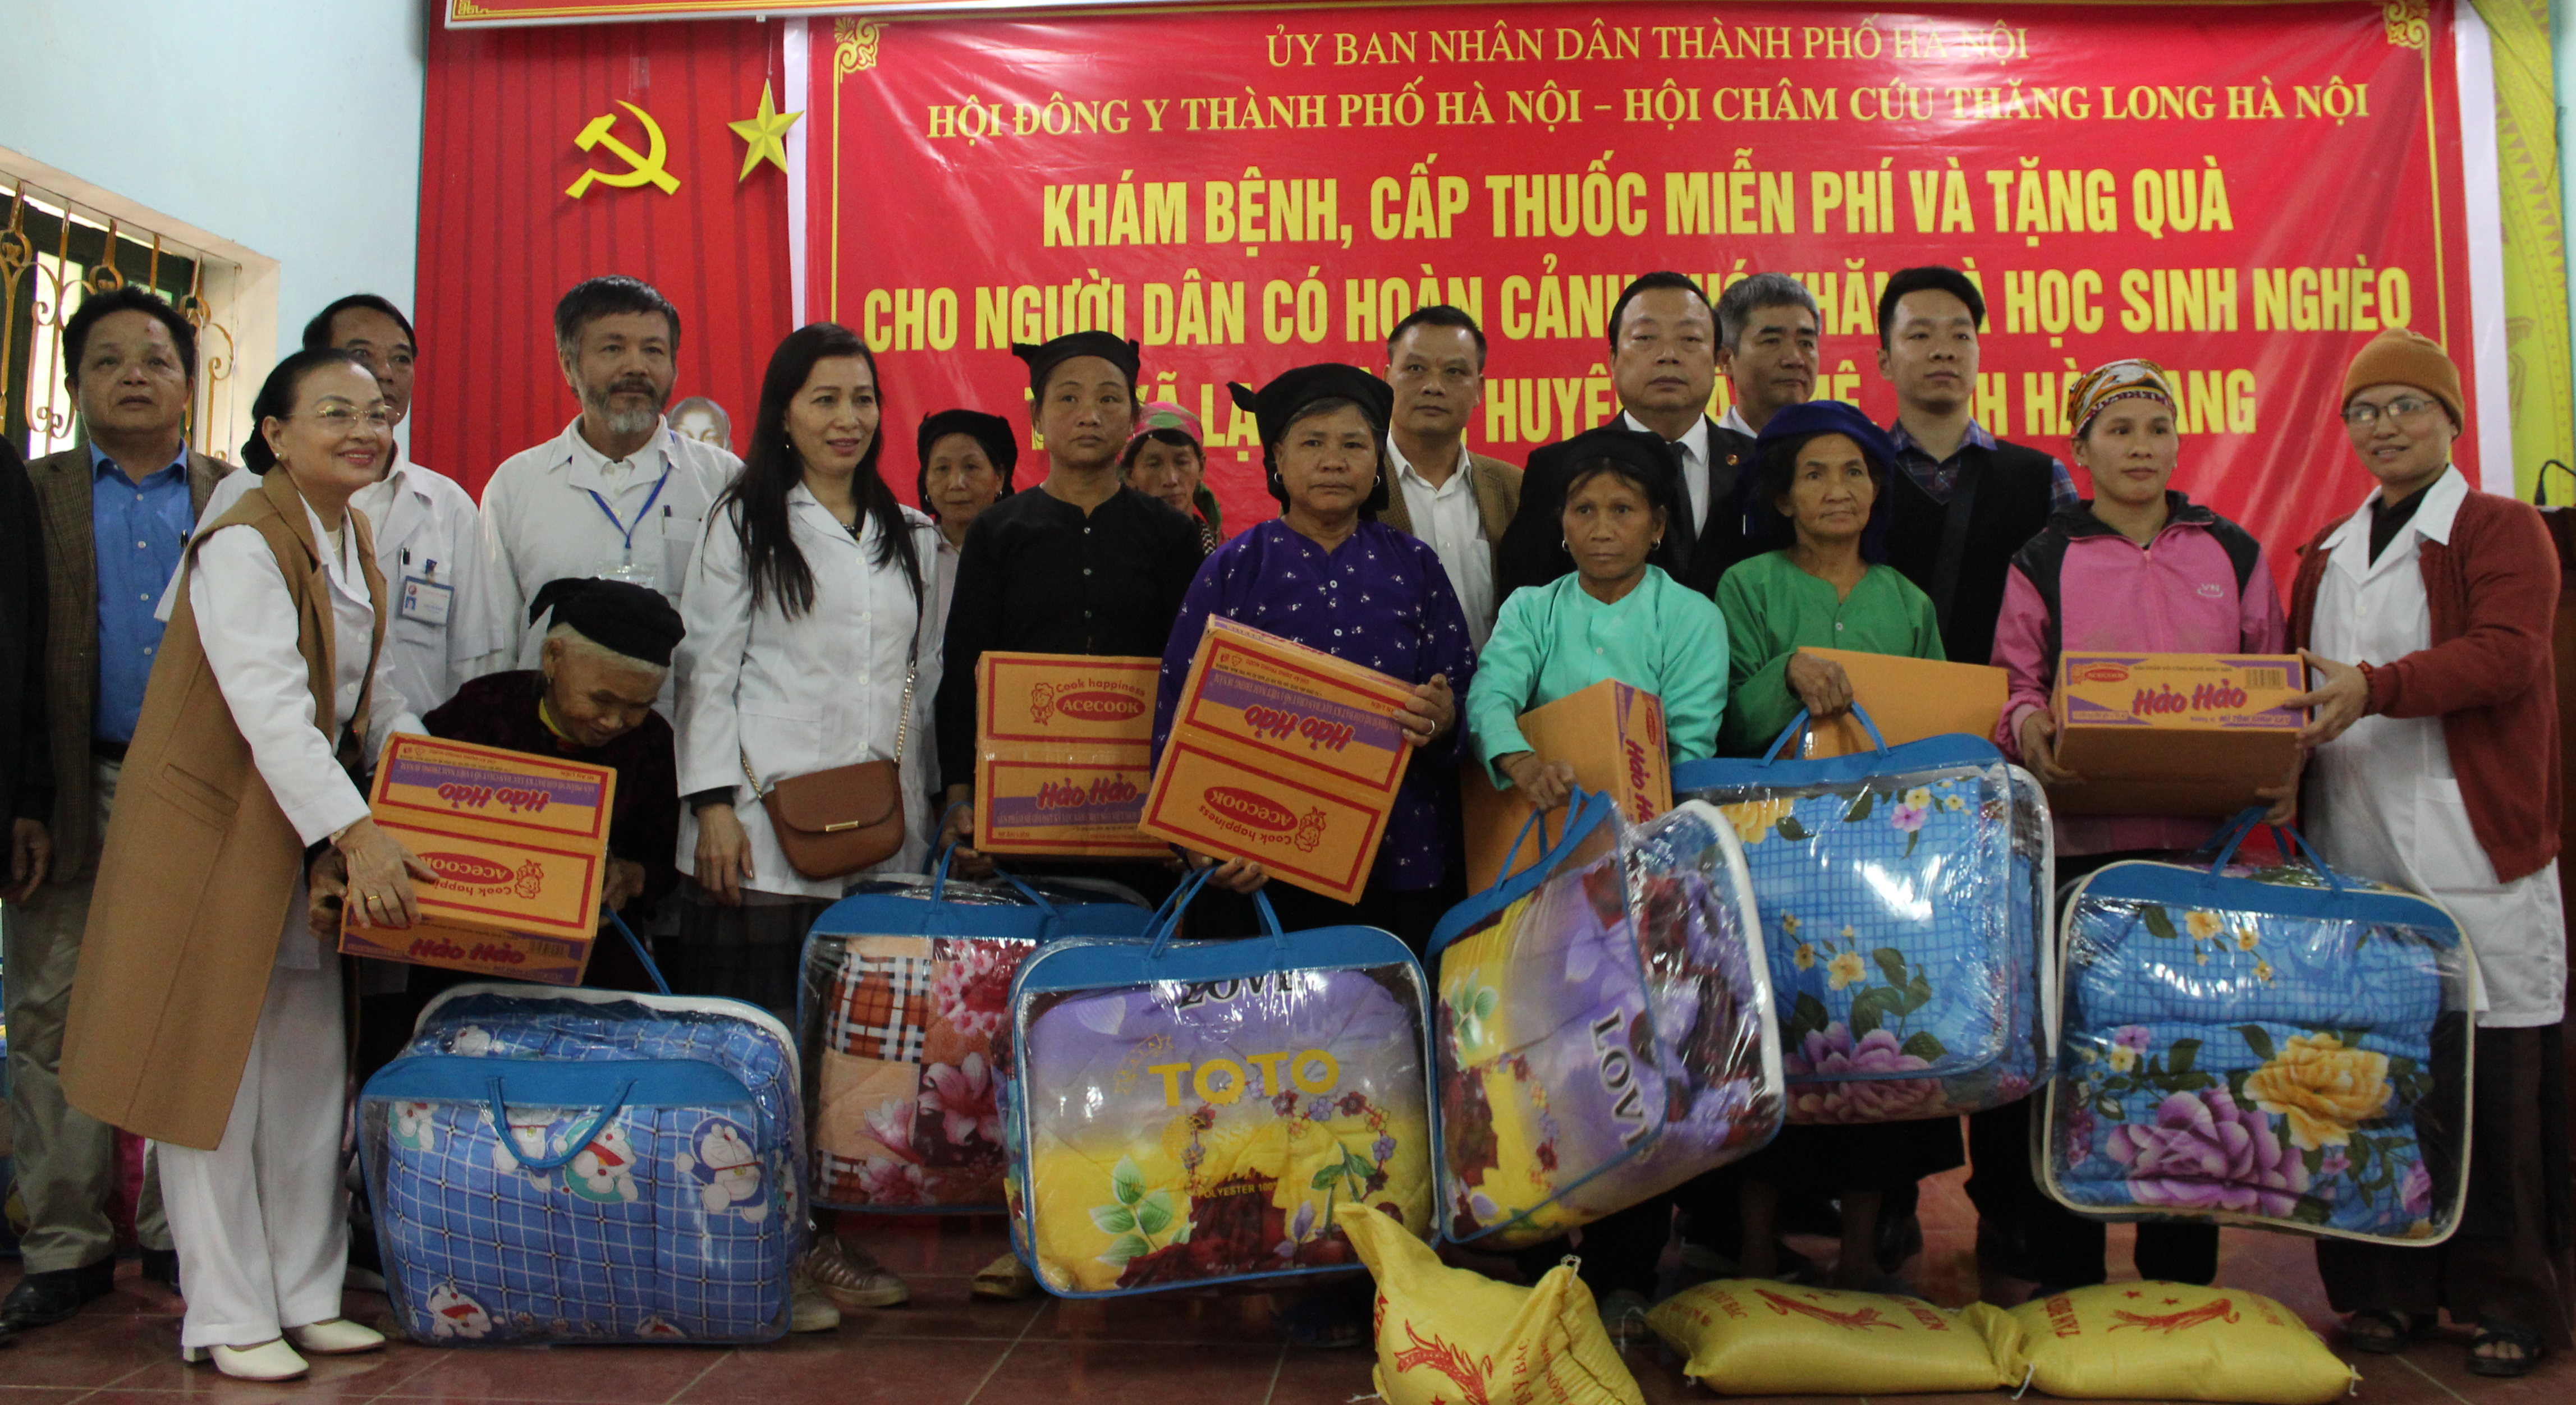 Đ/c Nguyễn Hồng Siêm, Chủ tịch Hội Đông y Hà Nội cùng lãnh đạo các đơn vị trao quà cho các hộ nghèo tại xã Lạc Nông huyện Bắc Mê